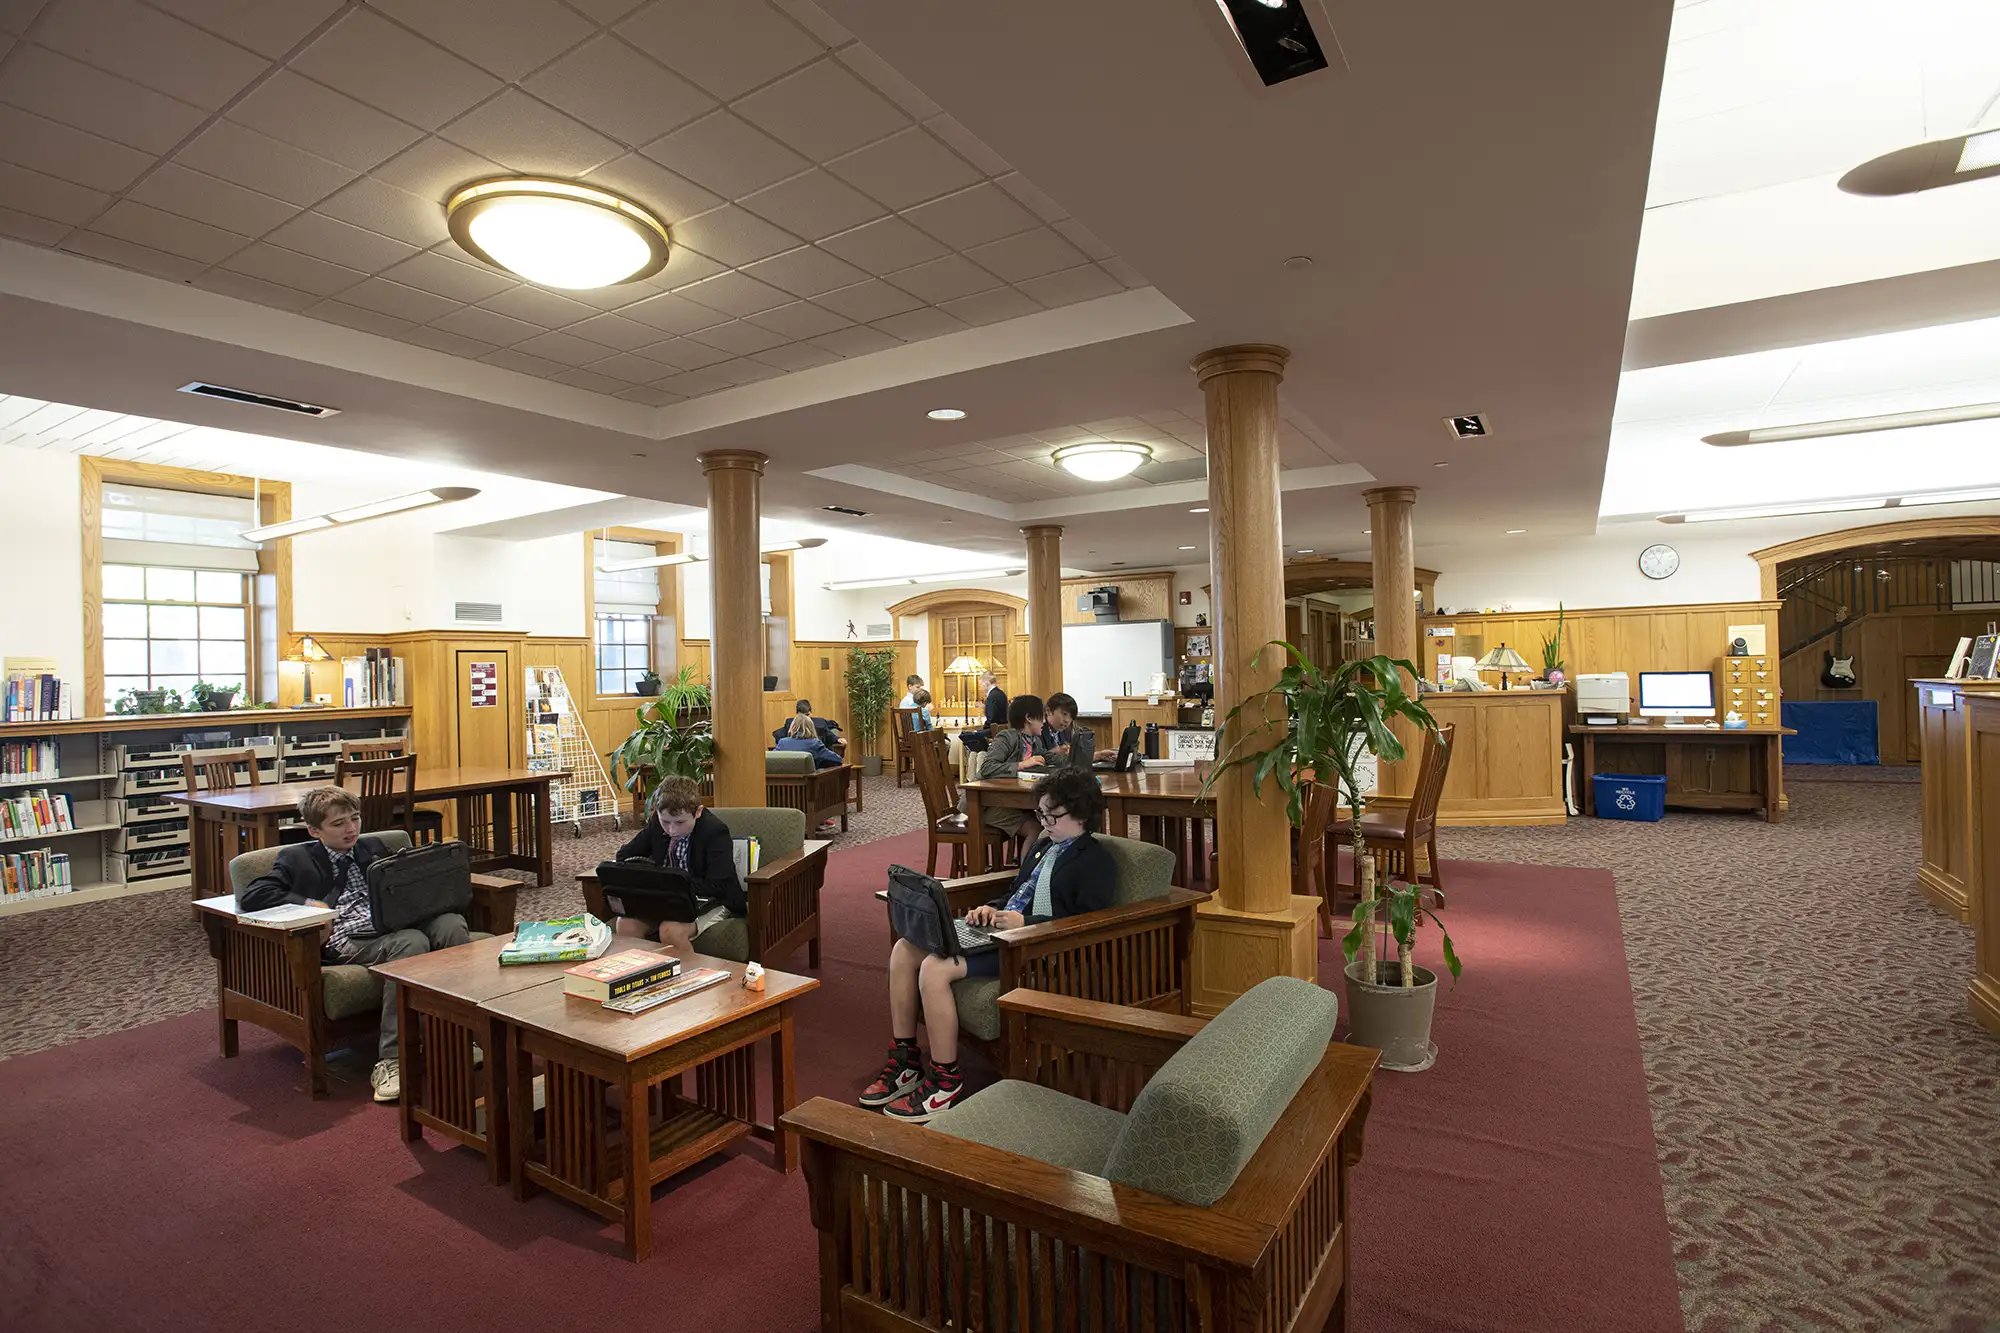 ウィーラー図書館で読書や勉強をする学生たち